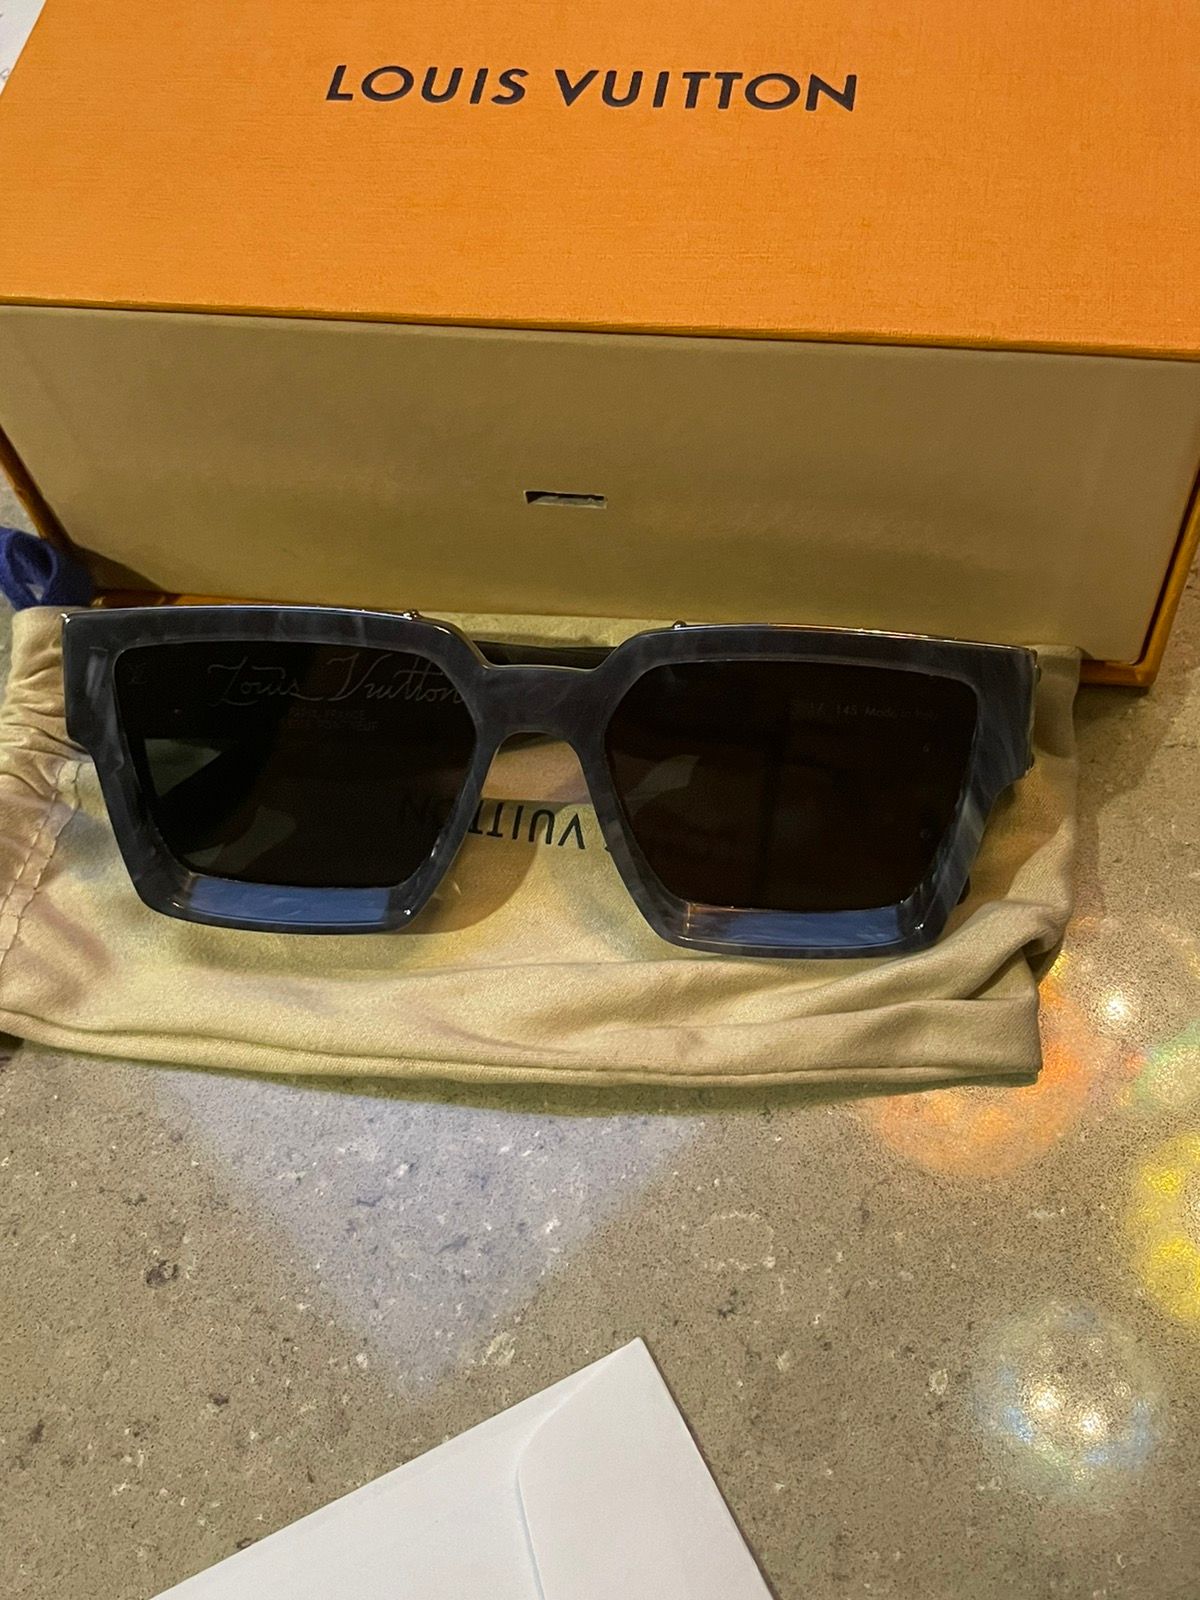 Louis Vuitton 1.1 Millionaires Sunglasses in “Gris Marble